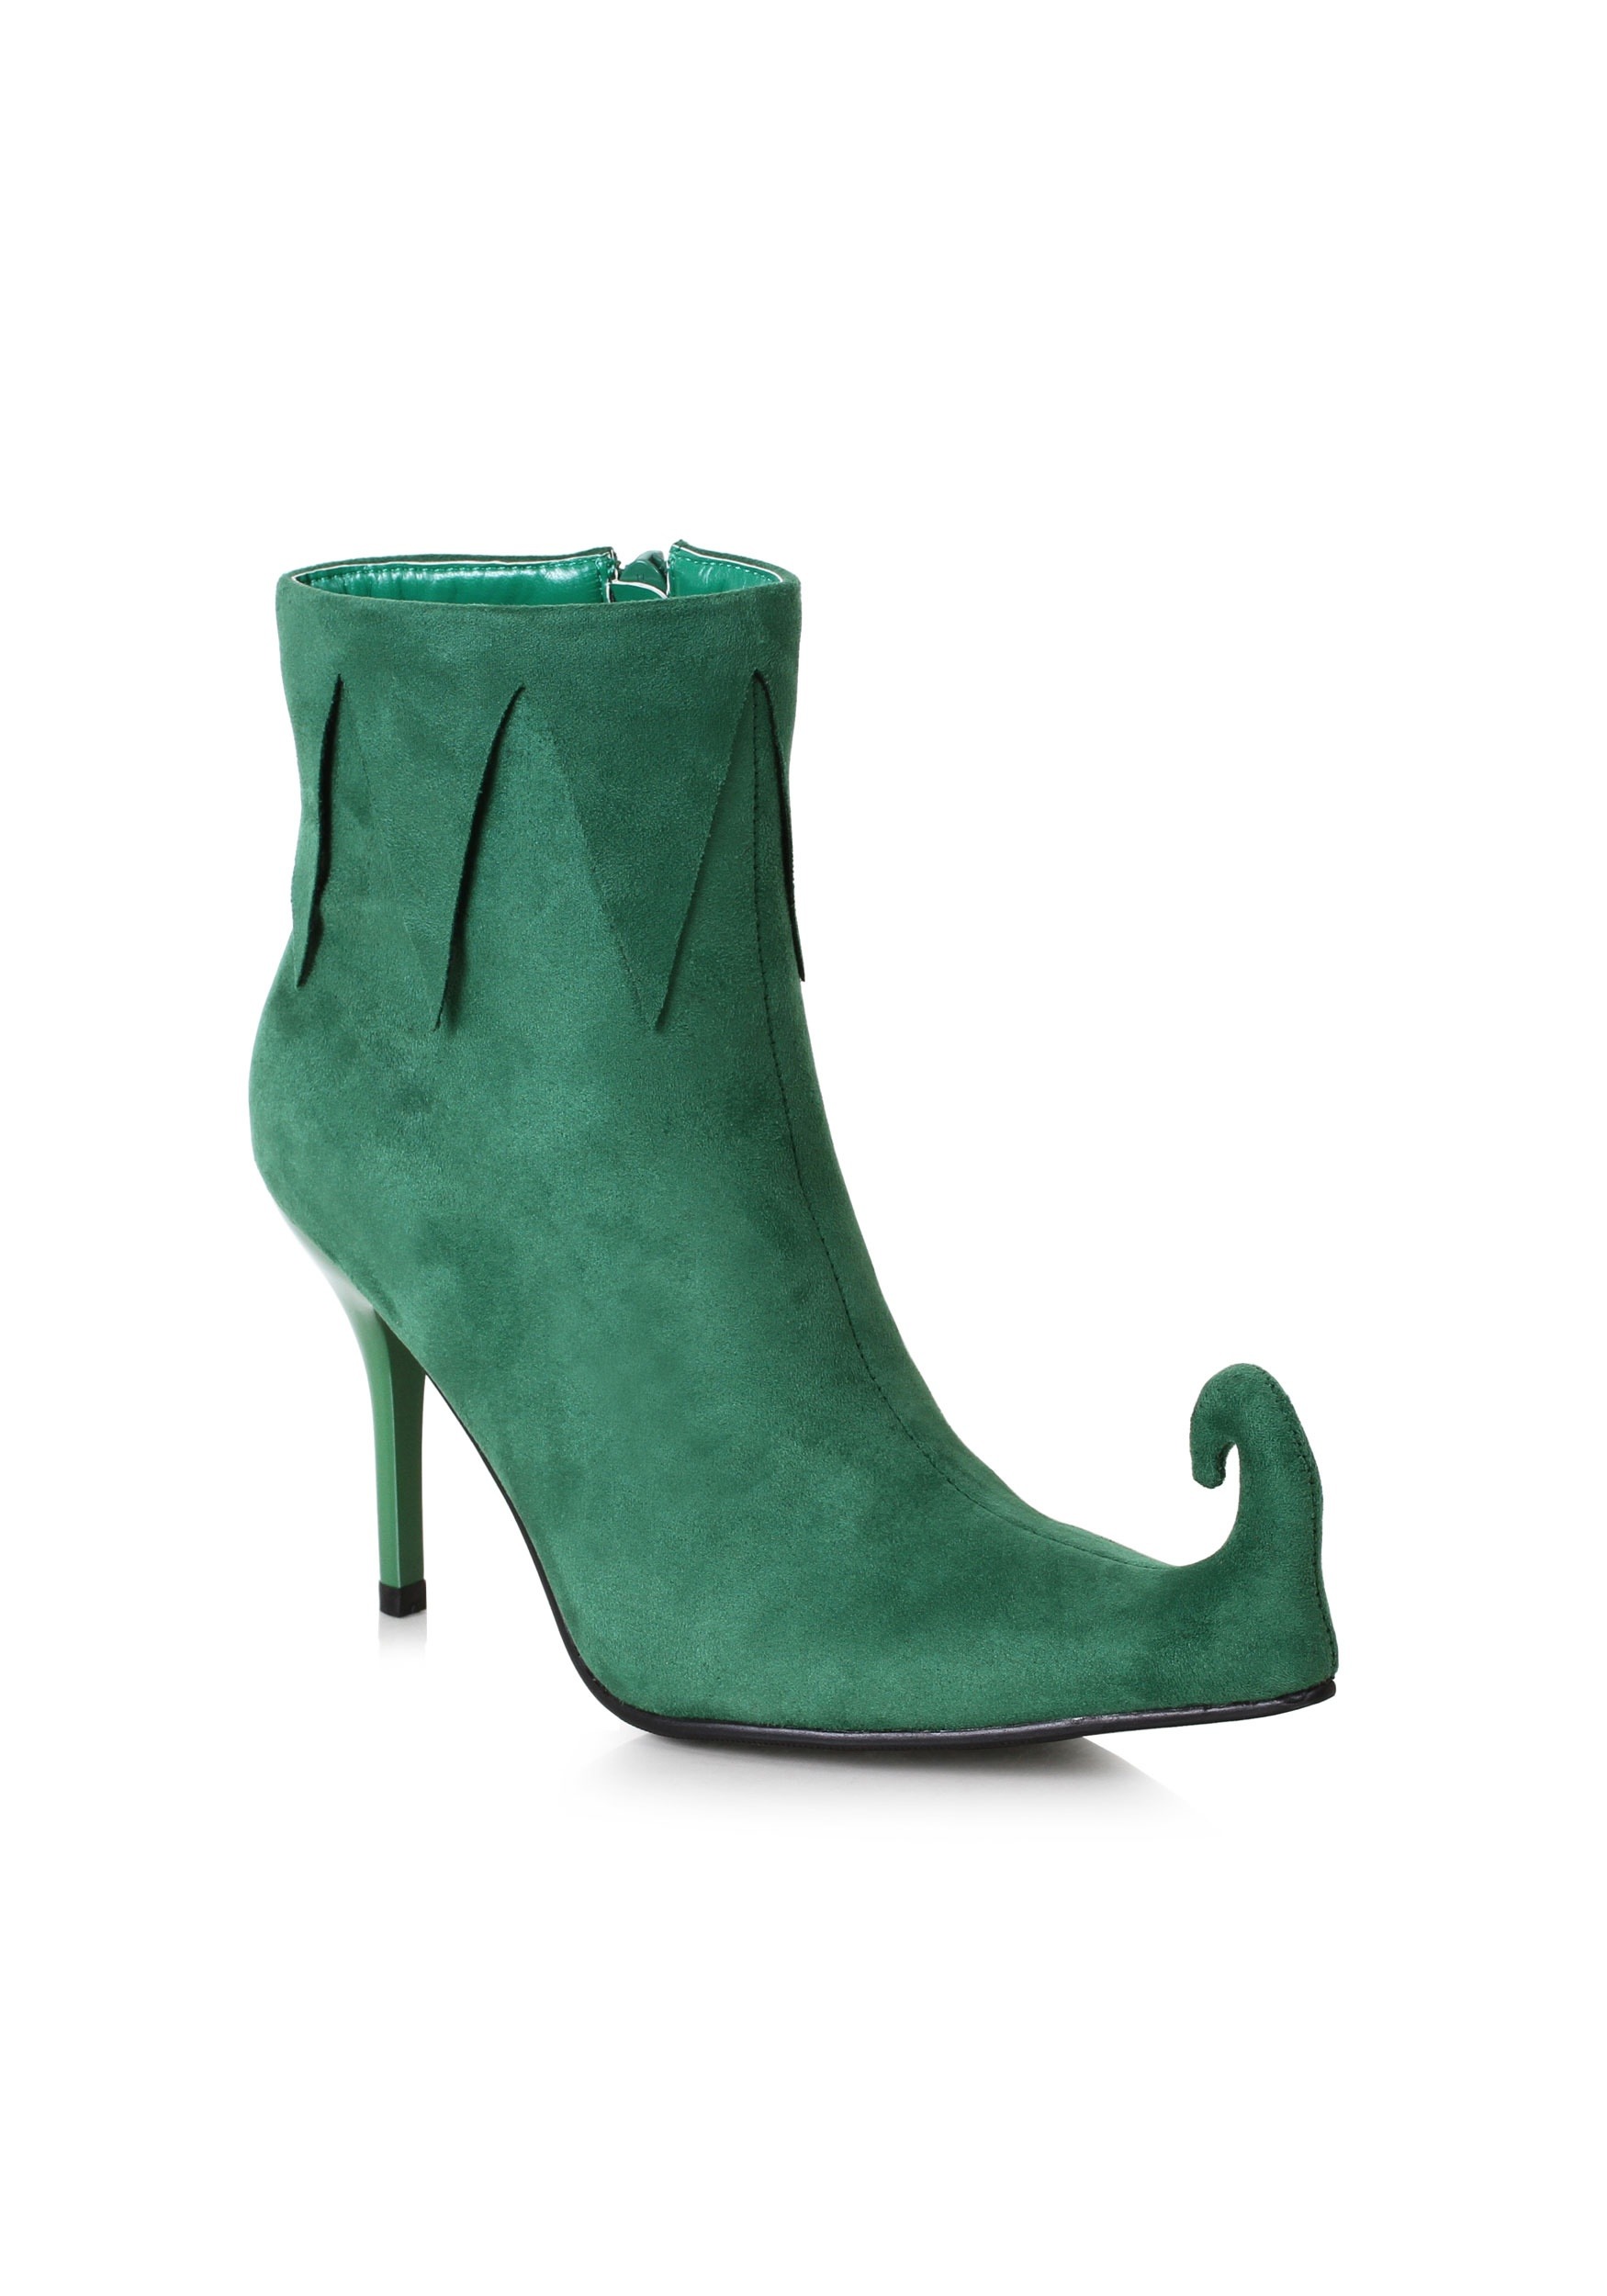 Botas de elfos verdes de mujeres Multicolor